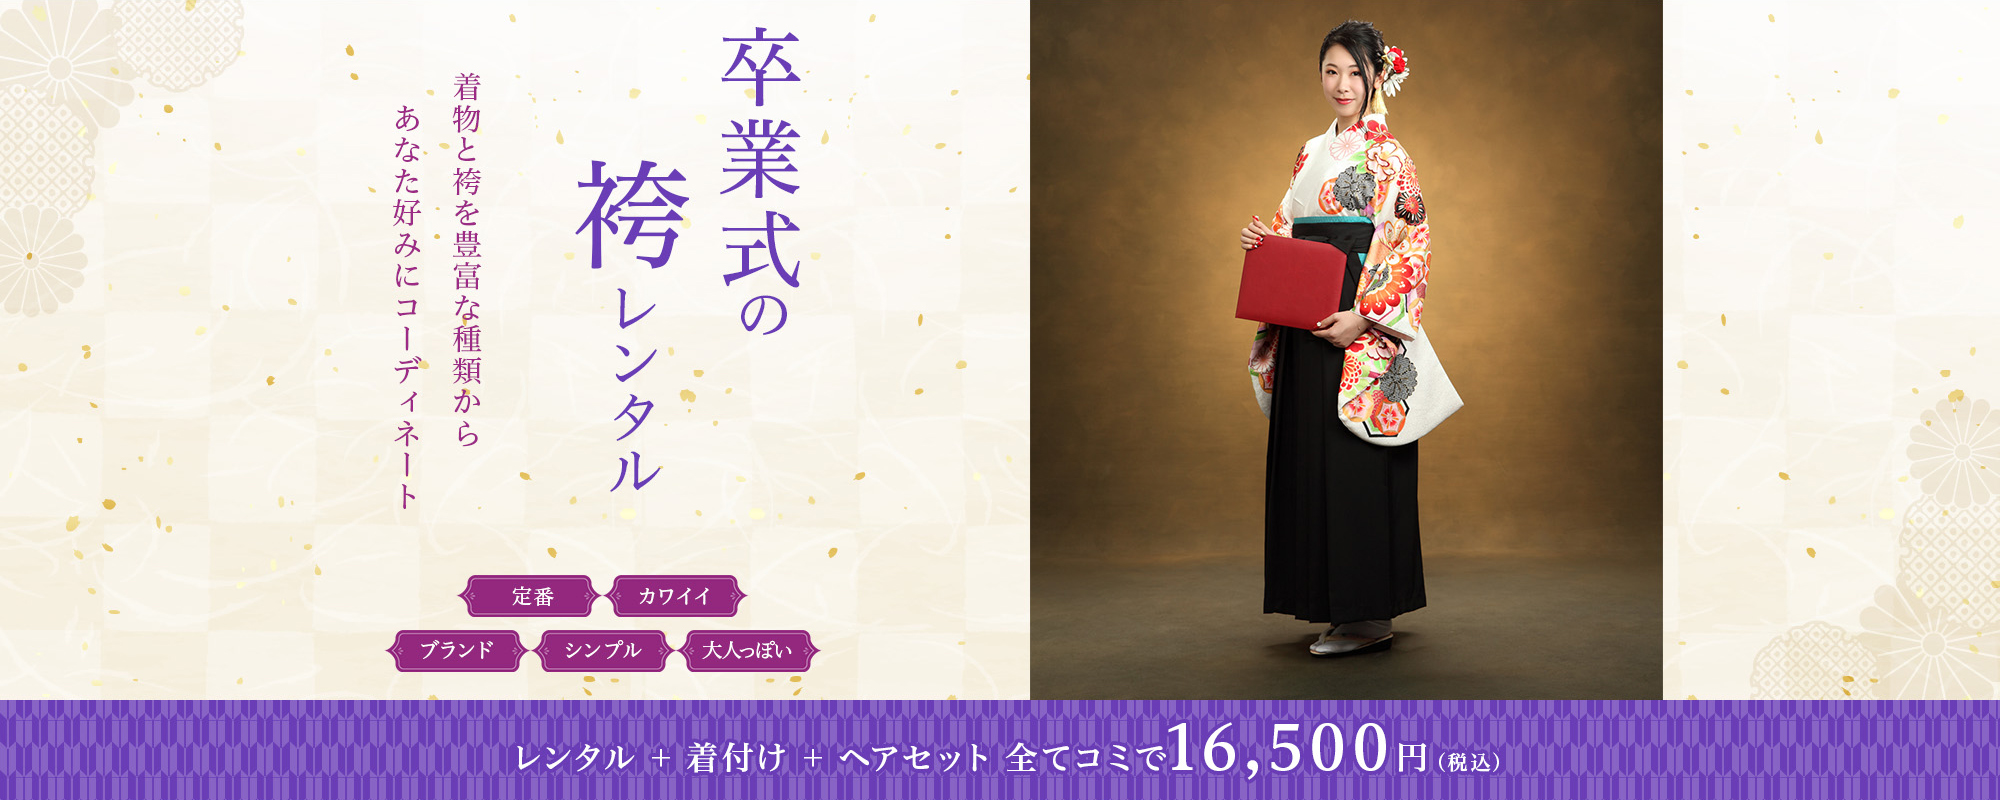 卒業式の袴レンタル 着物と袴を豊富な種類からあなた好みにコーディネート